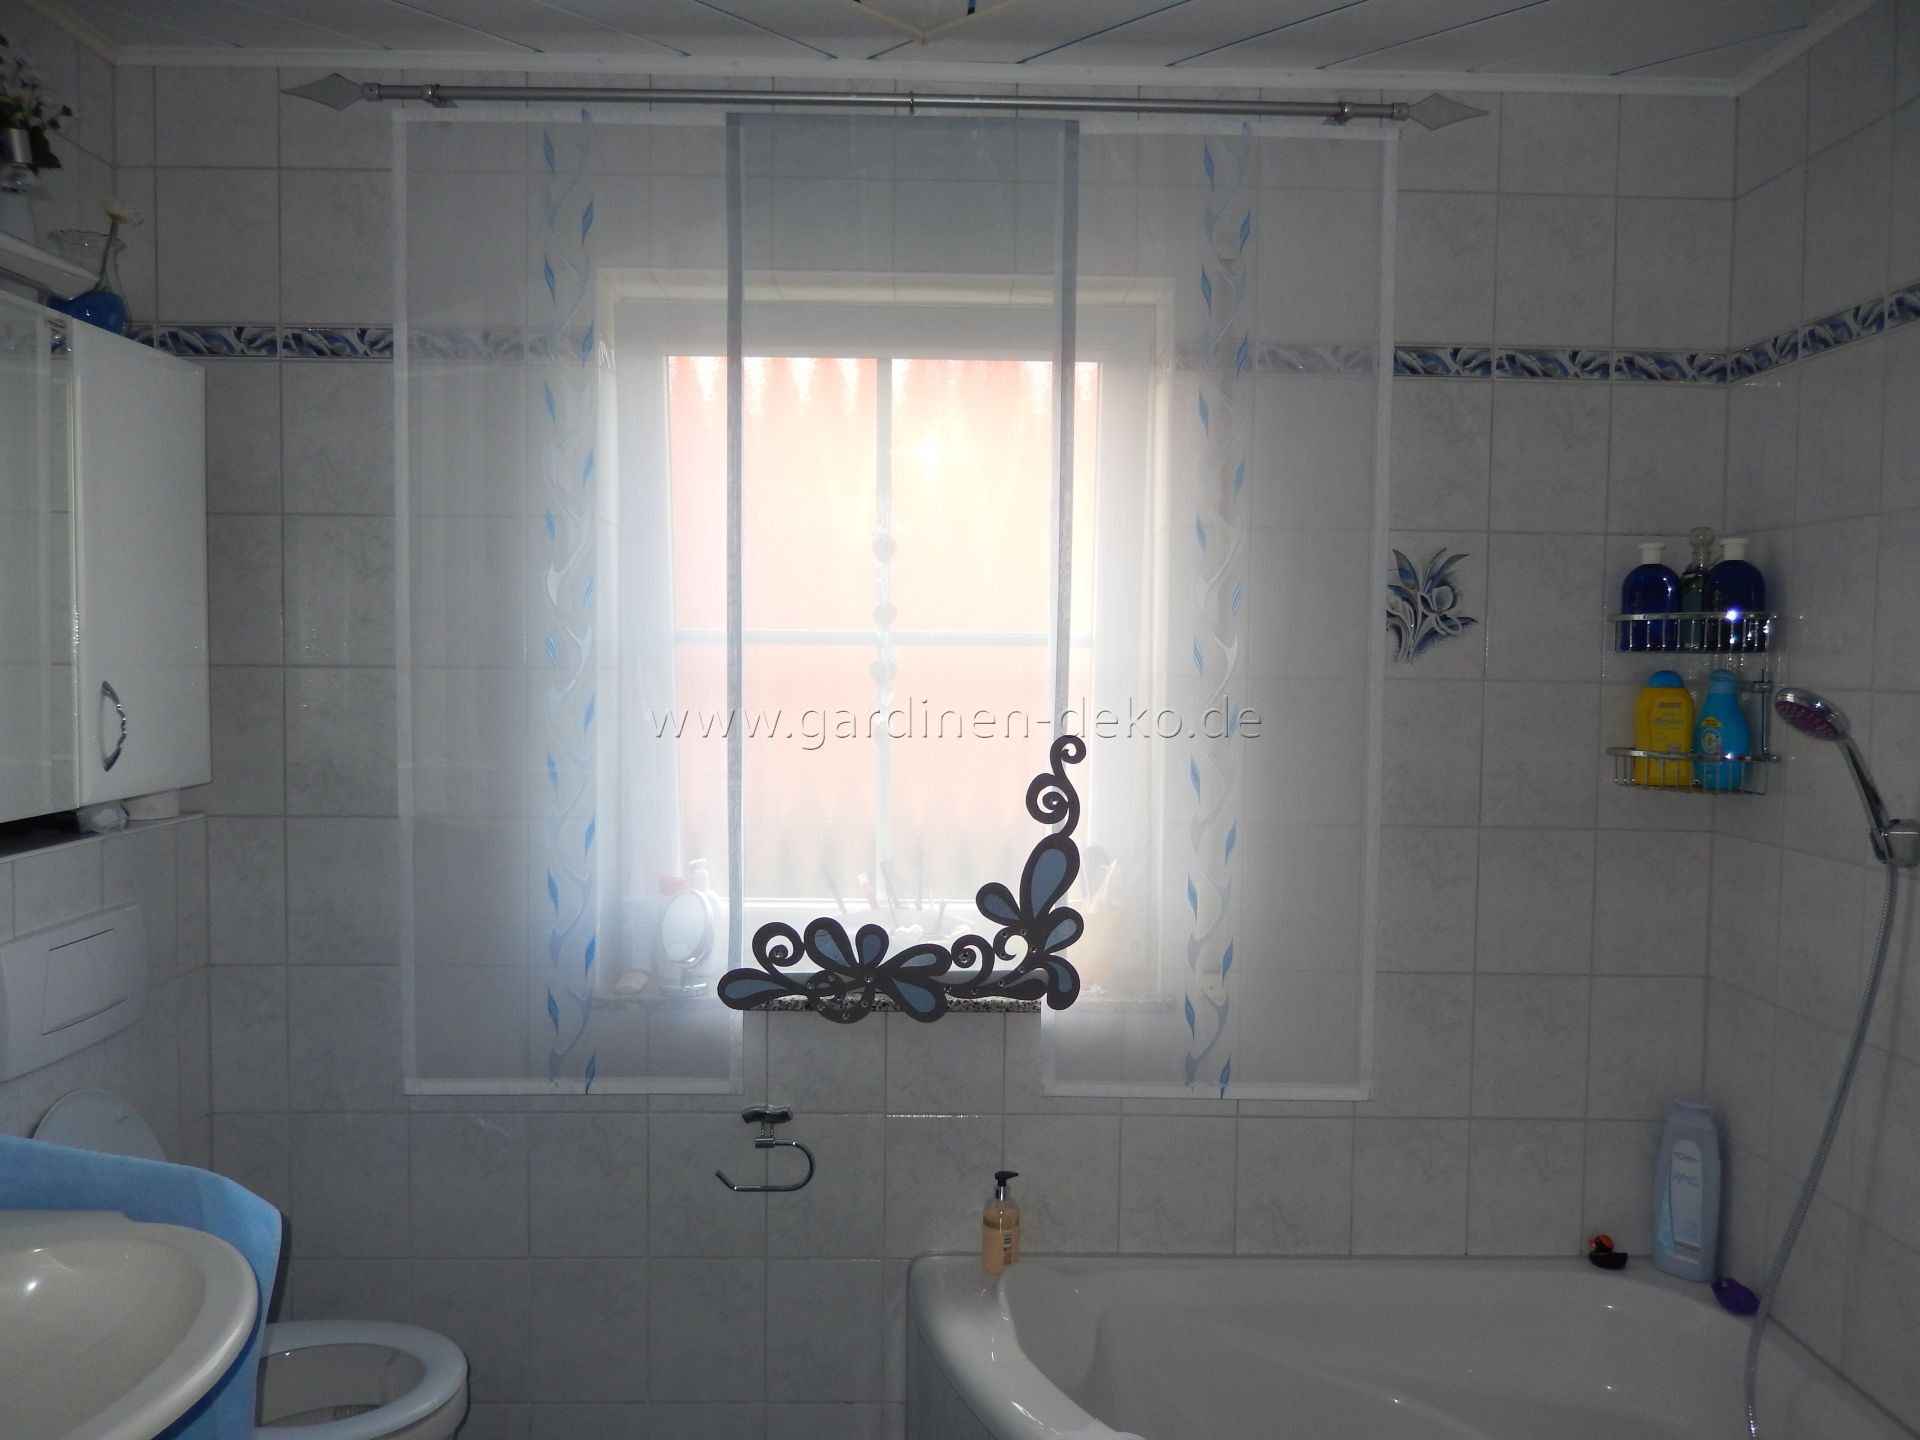 Badezimmer Gardinen
 Heller Badezimmer Schiebe Vorhang in weiß blau